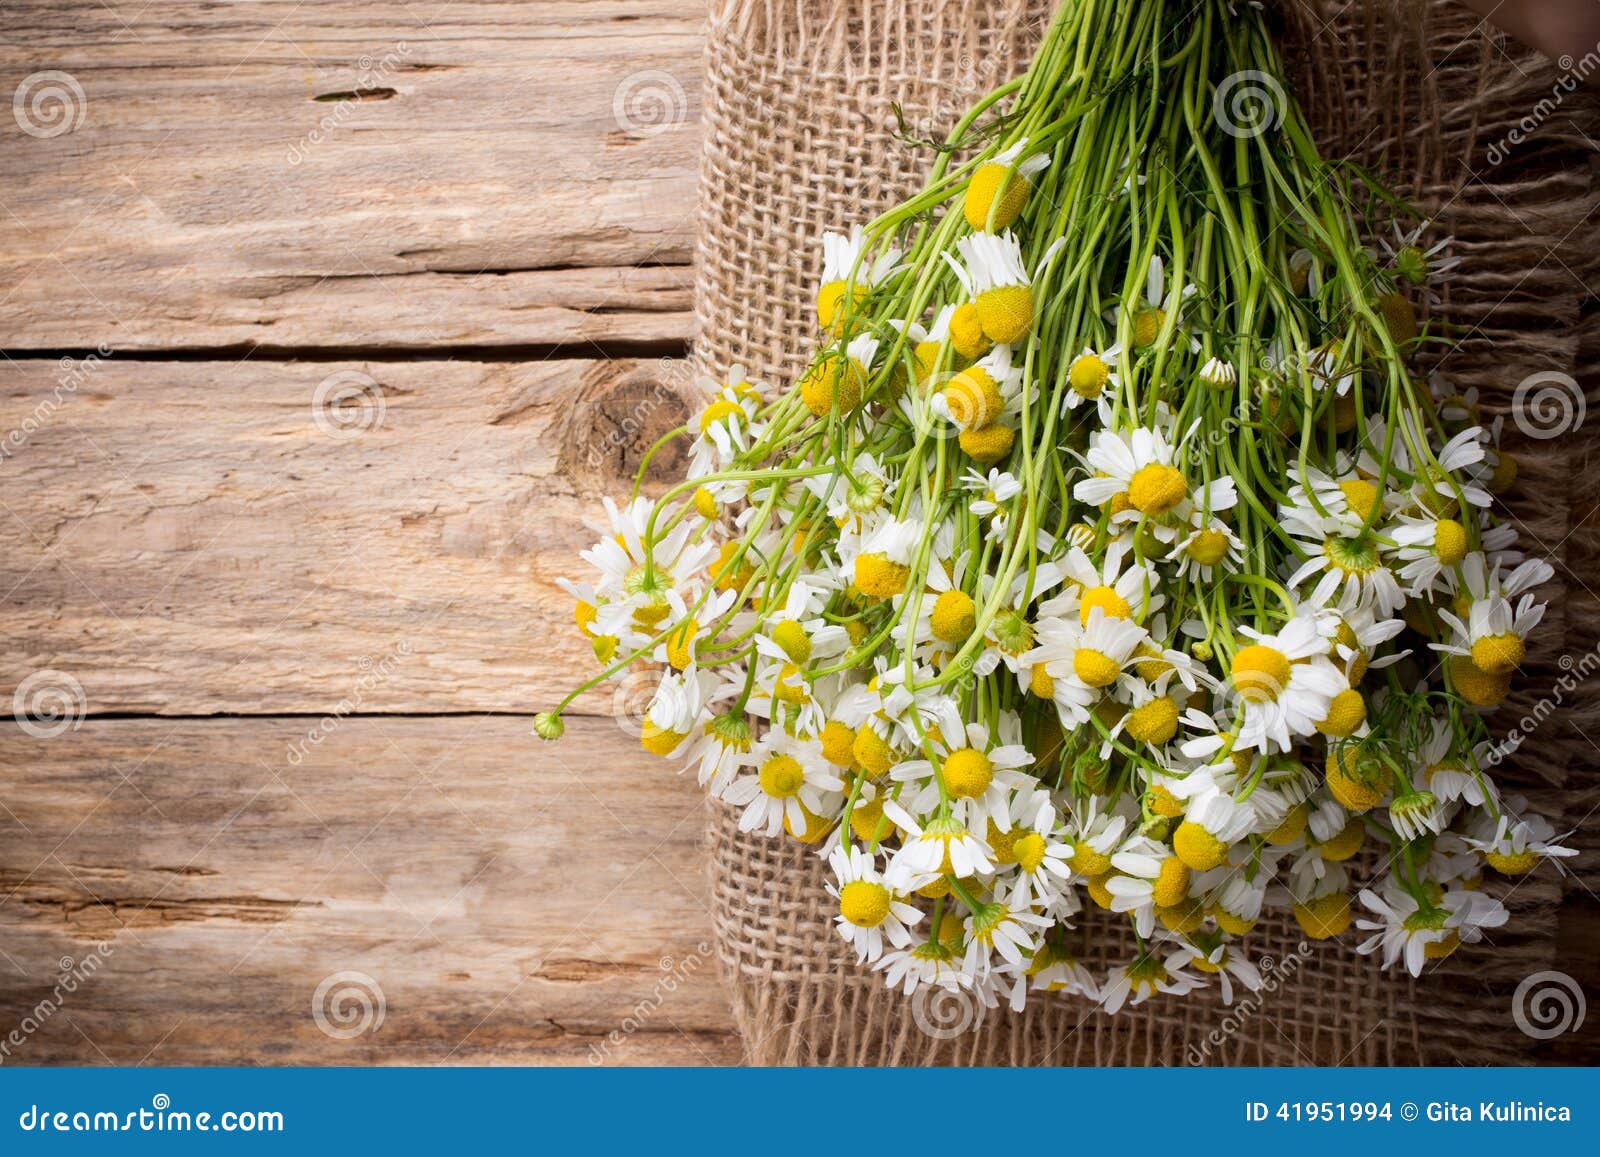 Λουλούδια Chamomile σε ένα ξύλινο υπόβαθρο στενό απομονωμένο λευκό δοντιών στούντιο φωτογραφίας βουρτσών ανασκόπησης επάνω